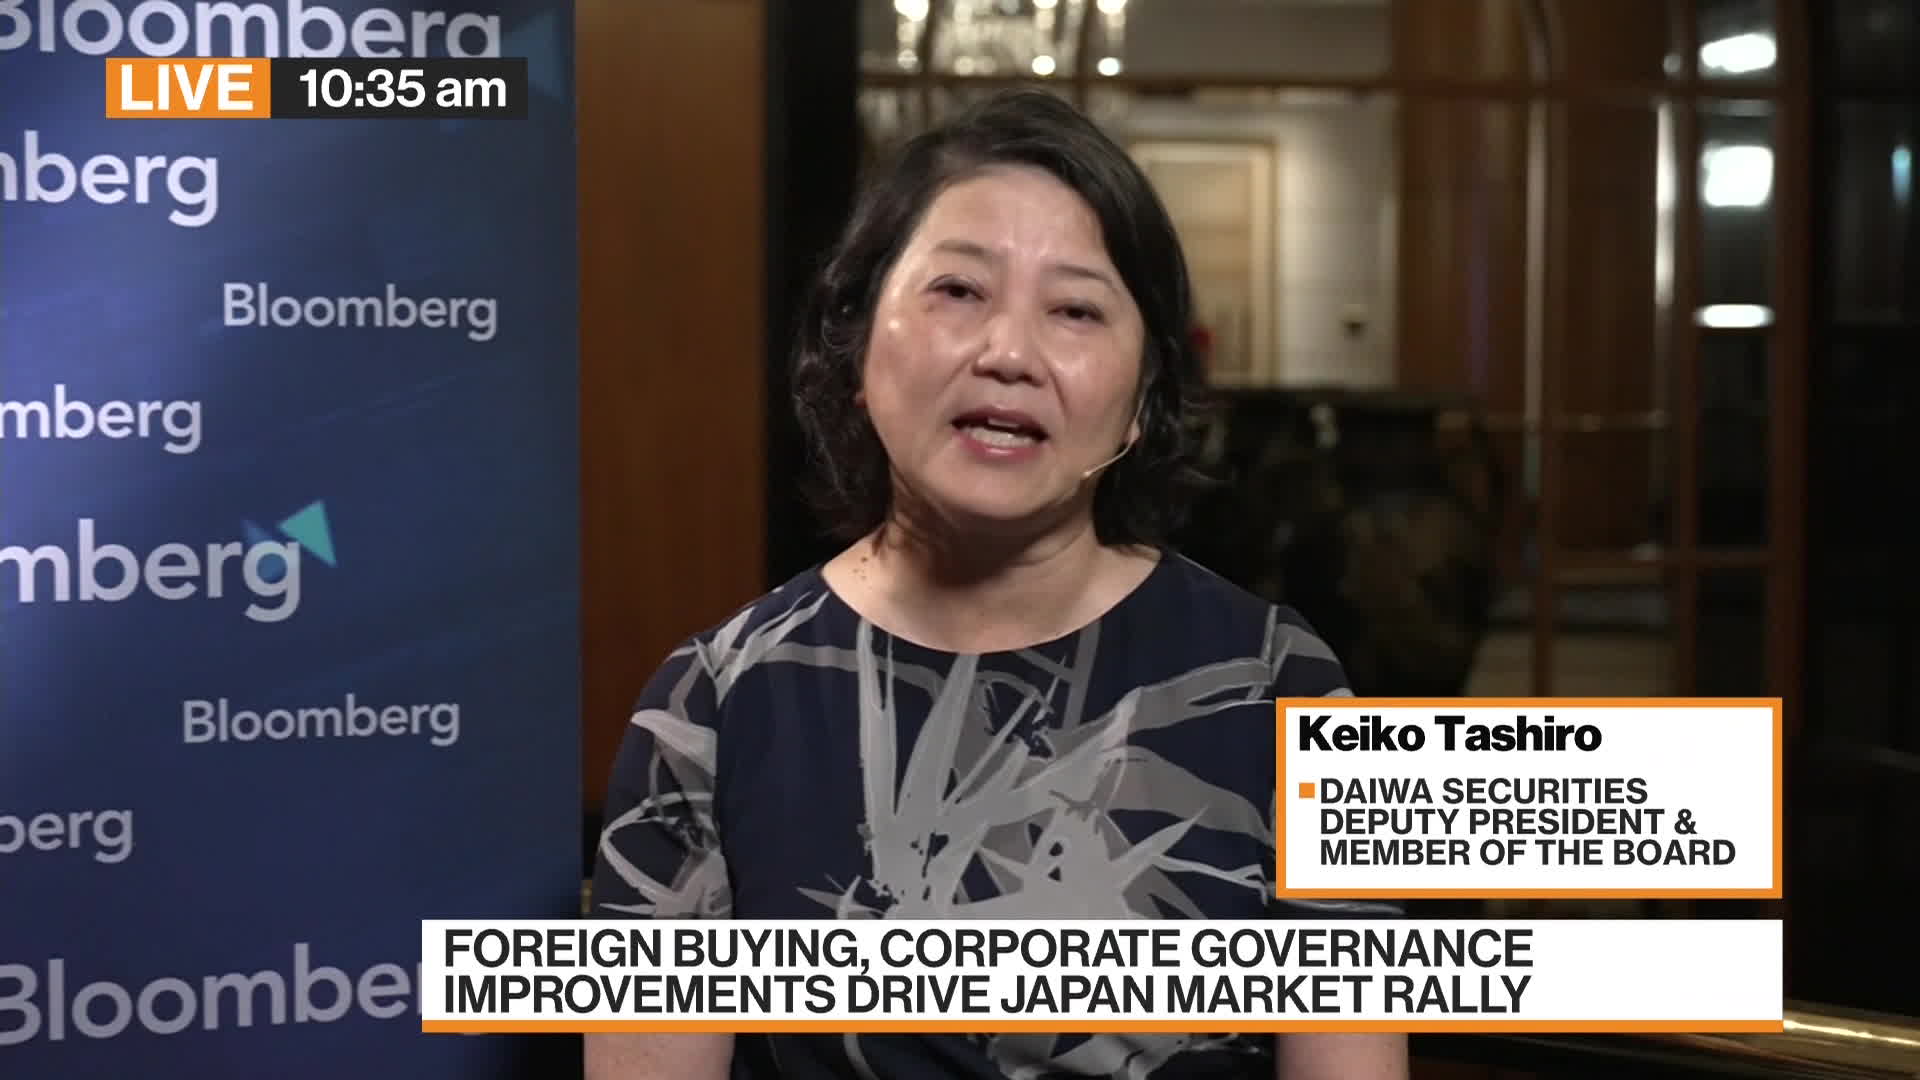 Watch The Mood in Japan has Changed: Daiwa Securities's Tashiro